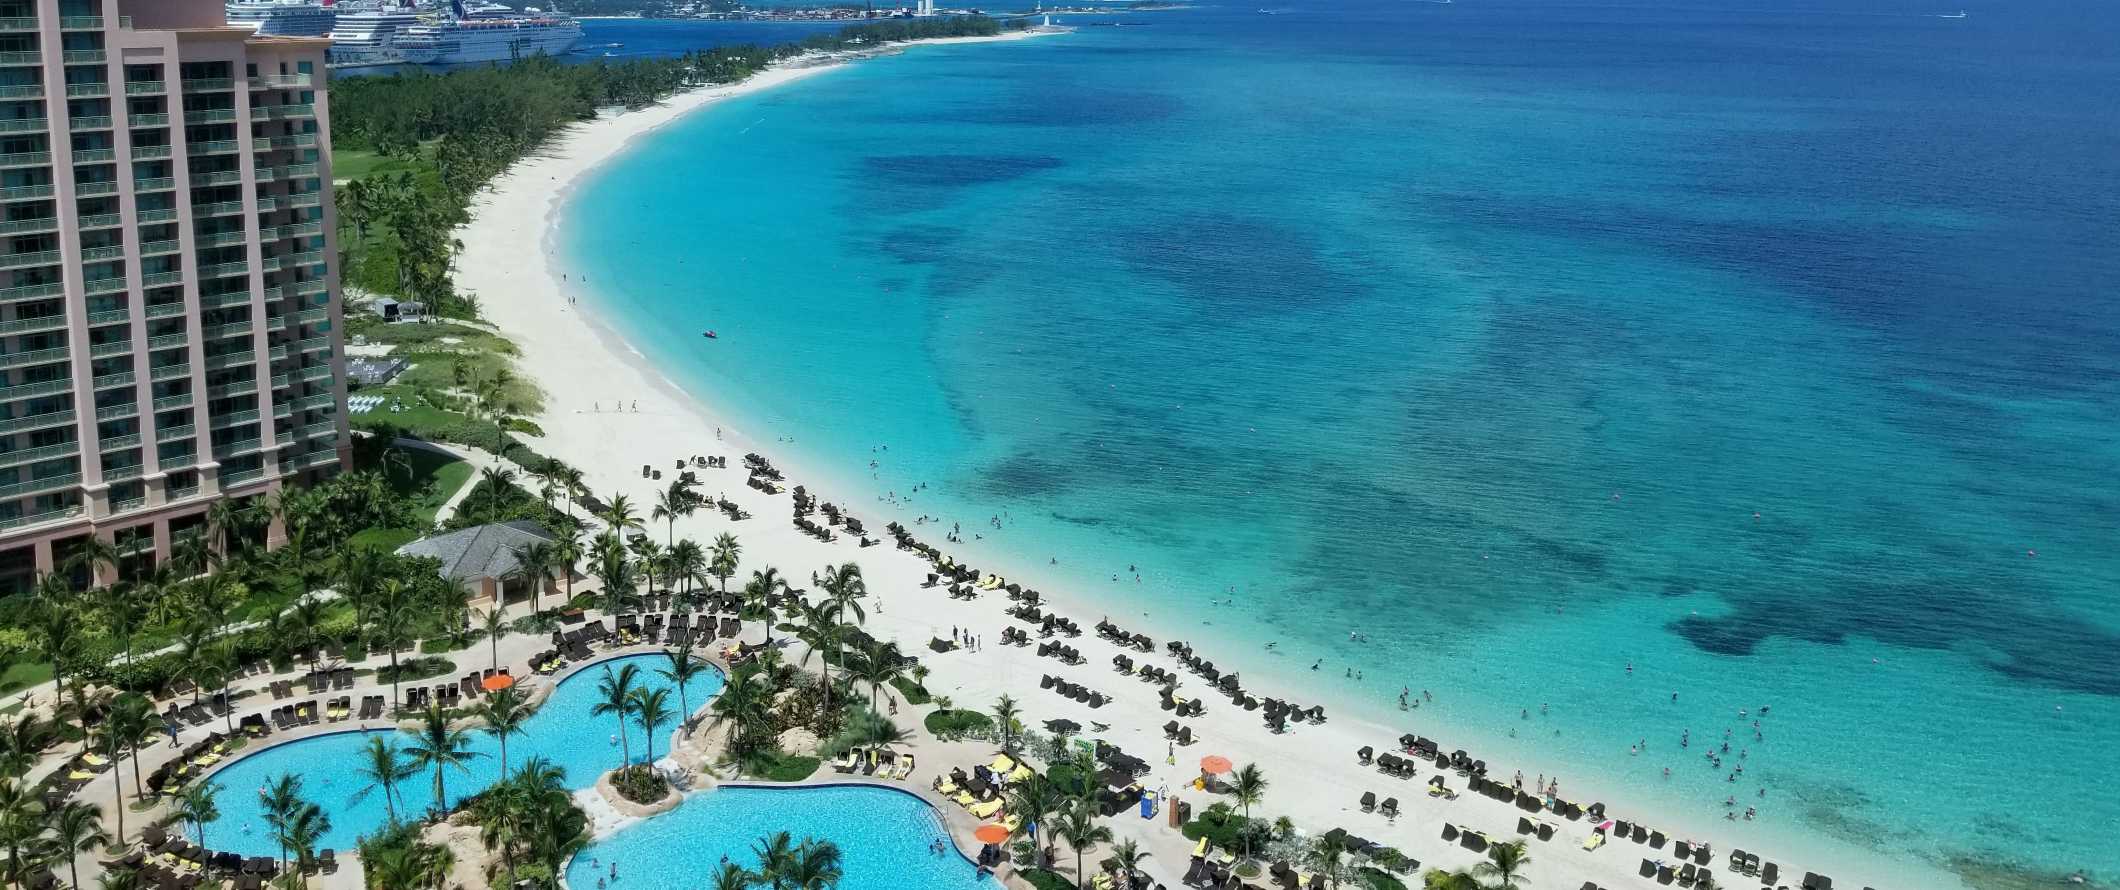 Vista de drone das piscinas do resort em um grande hotel ao longo da praia com água azul-turquesa cristalina nas Bahamas